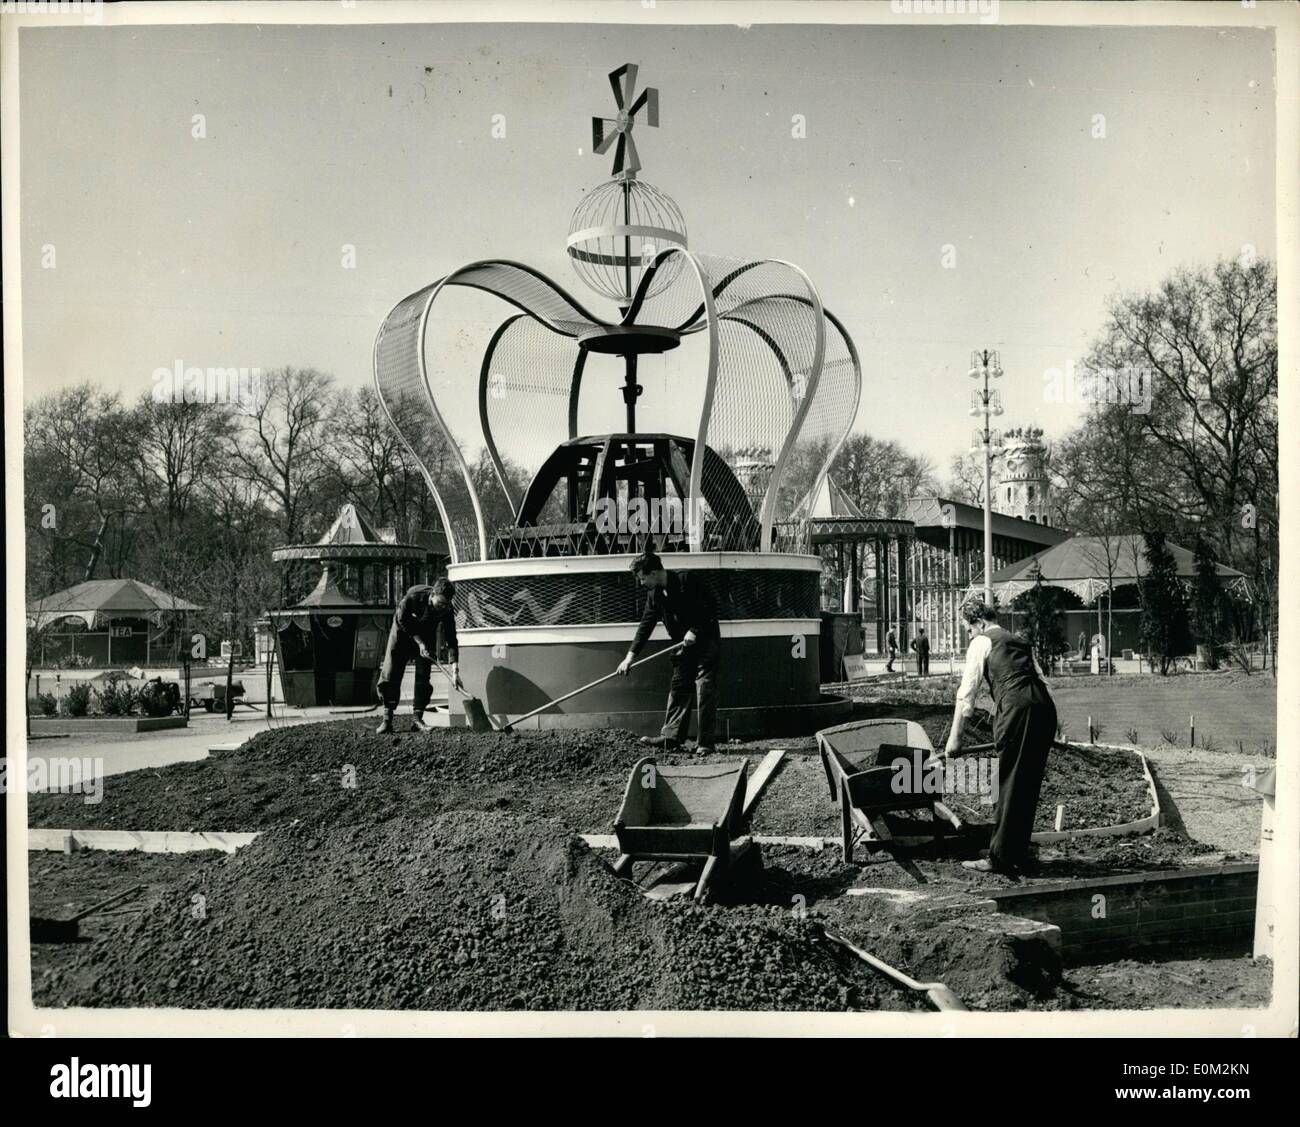 4. April 1953 - Floral Krone auf dem Battersea-Festival. Vorbereitung für die Krönung. Foto zeigt die Szene an der Battersea Festival Gardens - Arbeiter eine riesige florale Krone - Teil der bunten Dekorationen angeordnet, für die Krönung-Saison vorbereiten. Stockfoto